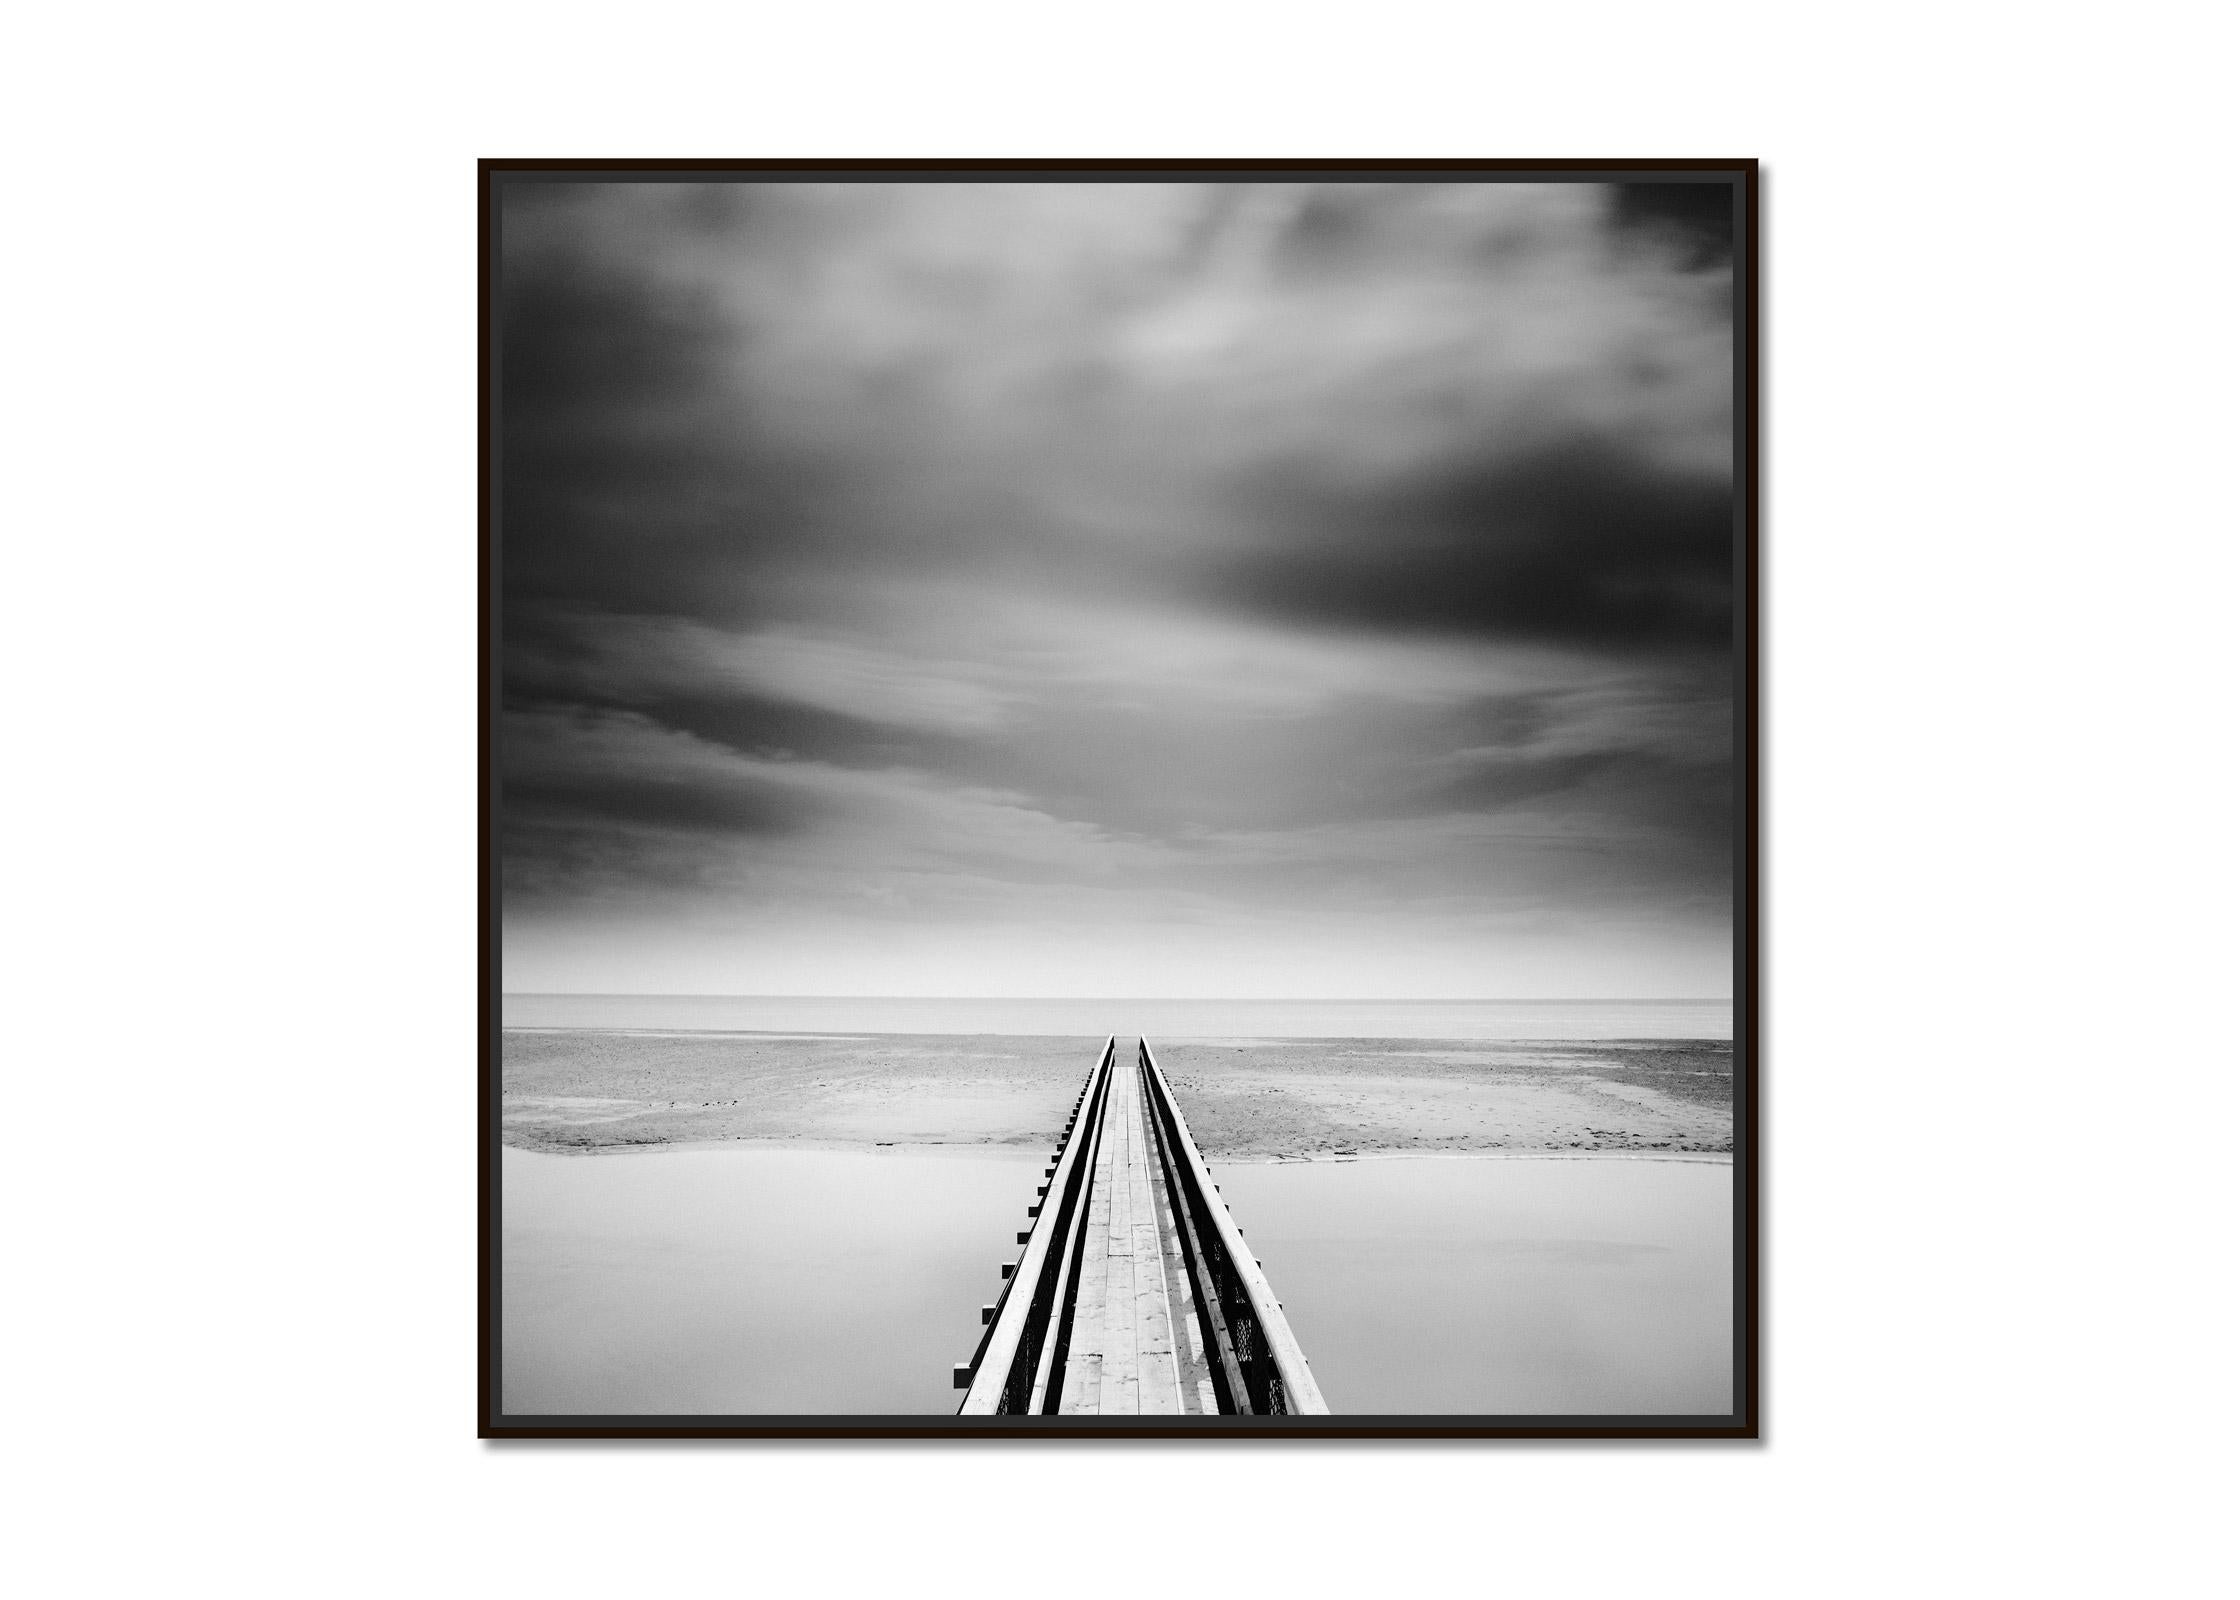 Über die Brücke, Irland, minimalistische Schwarz-Weiß-Landschaftsfotografie – Photograph von Gerald Berghammer